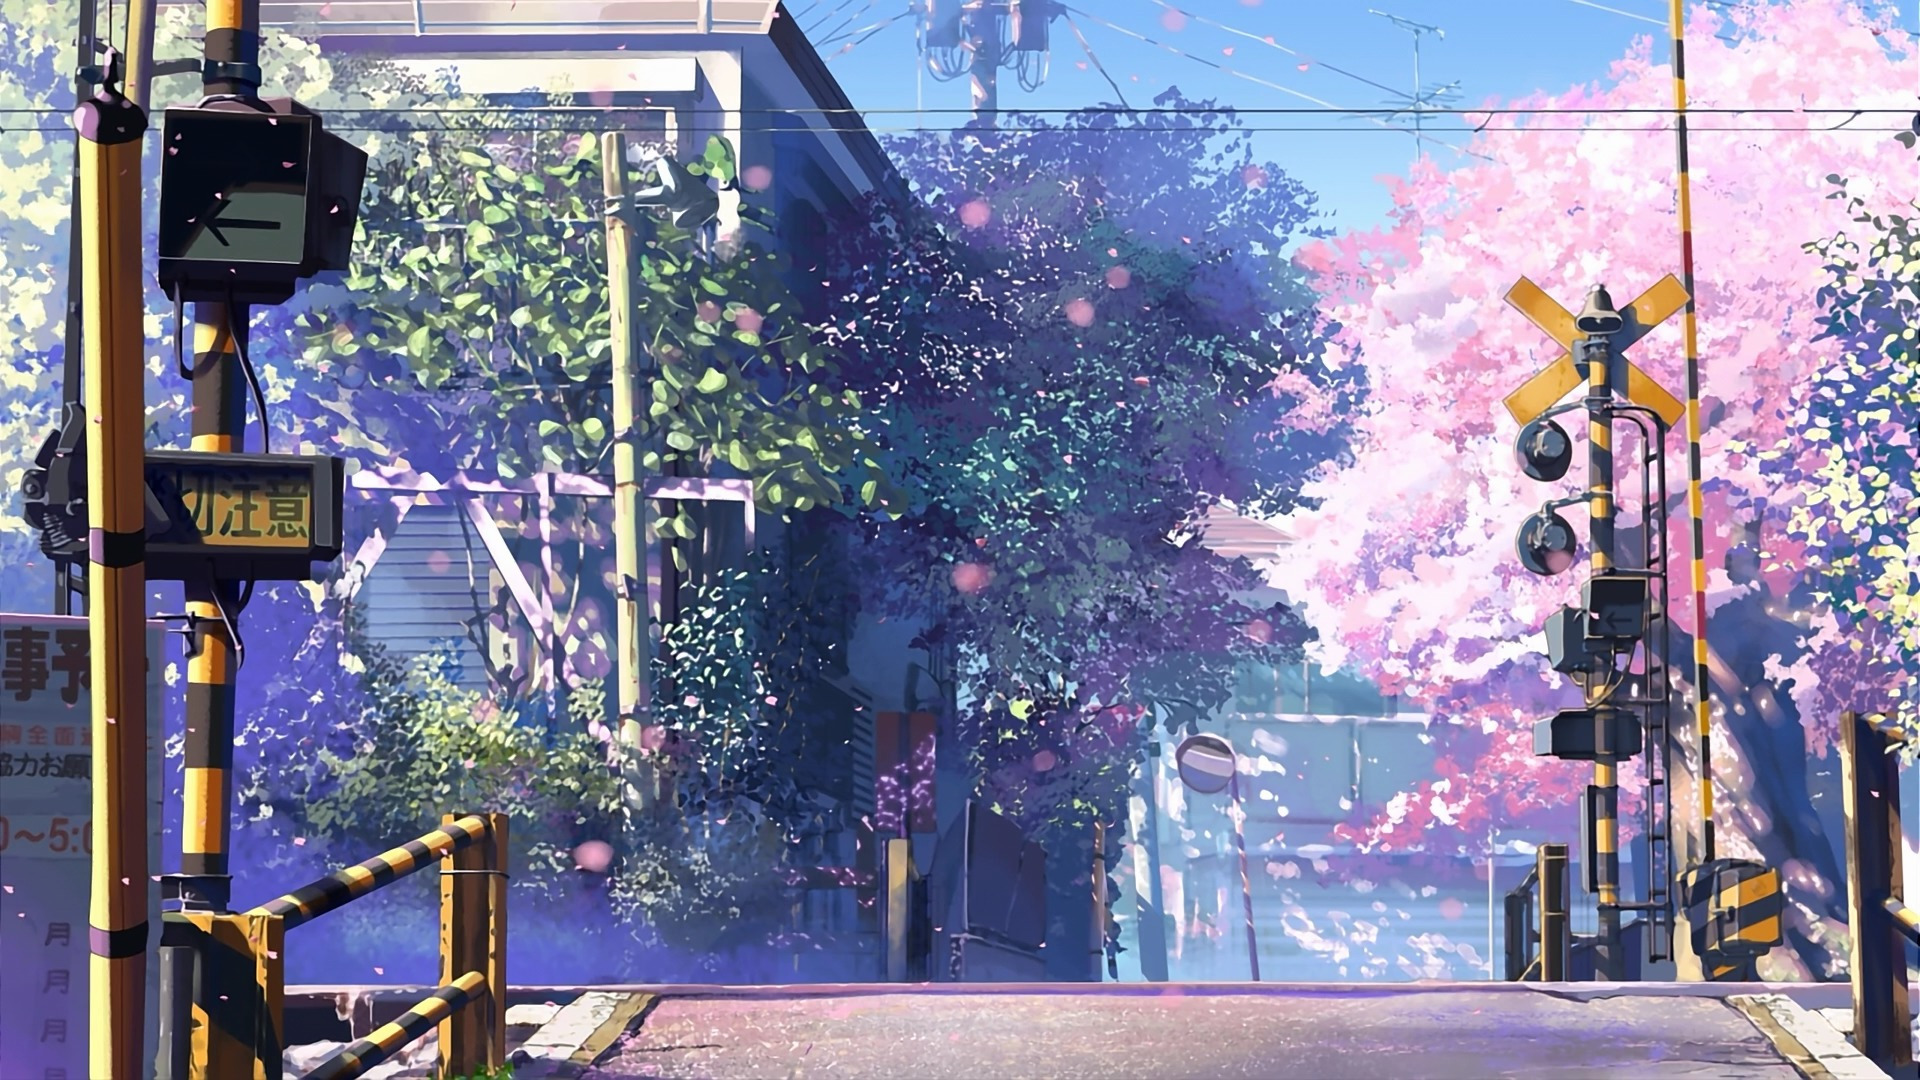 5 Centimeters Per Second Landscape Anime Traffic Mirror 1920x1080